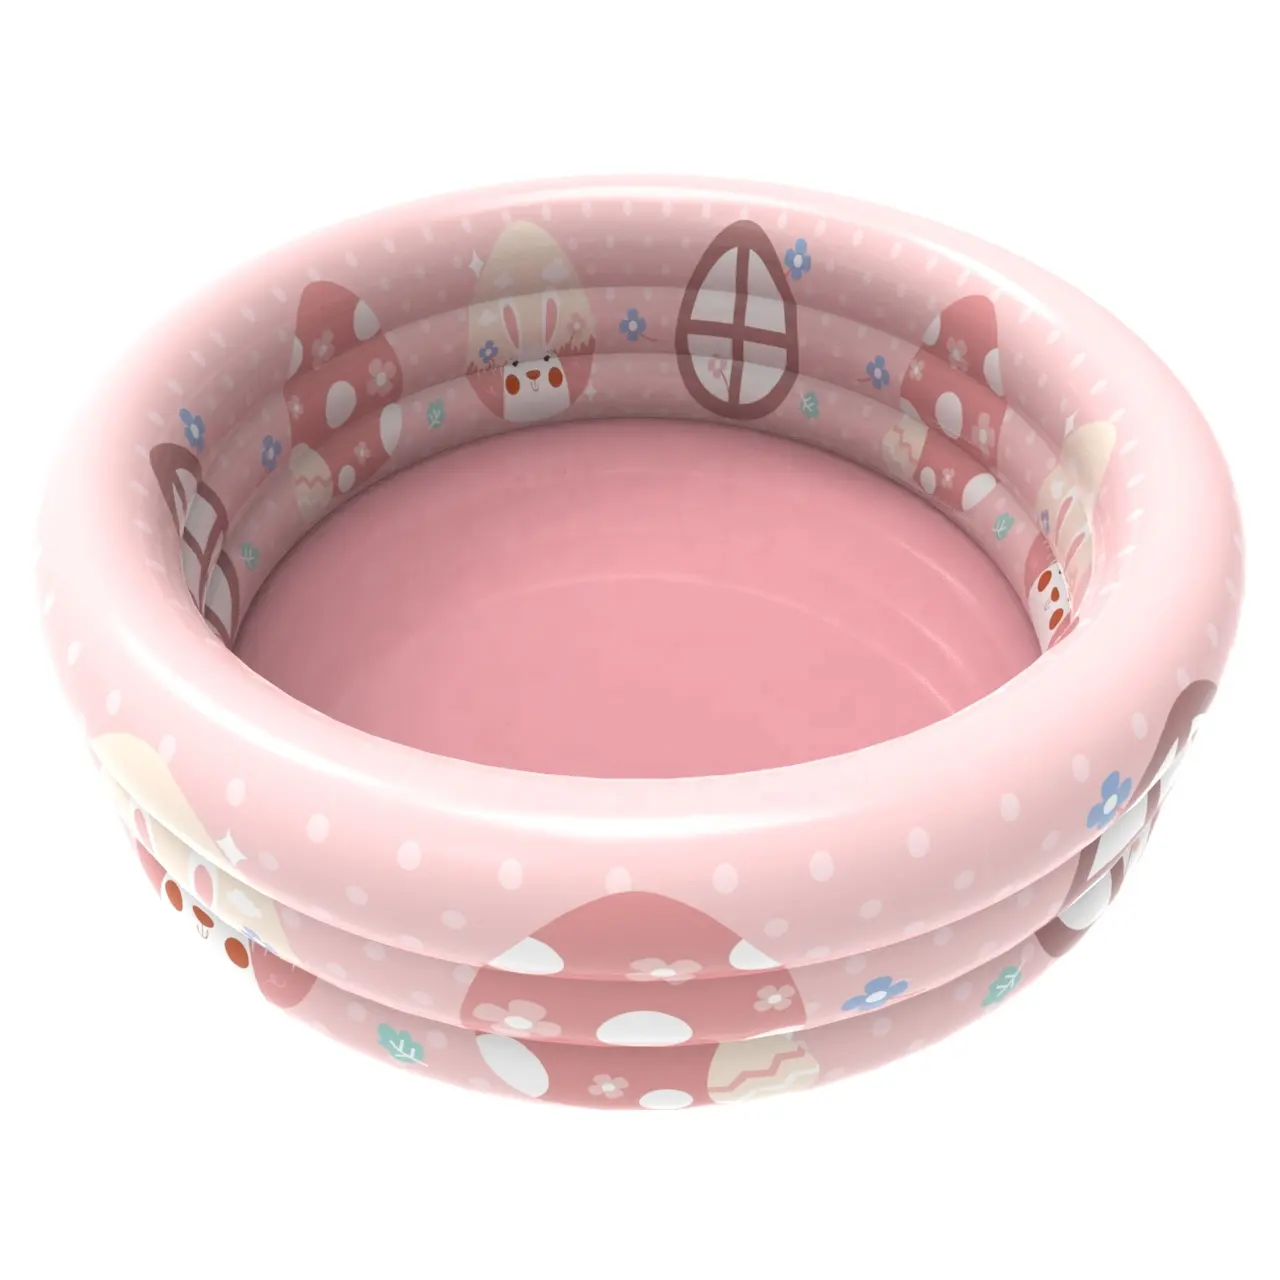 2021ใหม่ขายร้อน3แหวนอีสเตอร์กระต่ายสีชมพูเด็กพองสระว่ายน้ำ